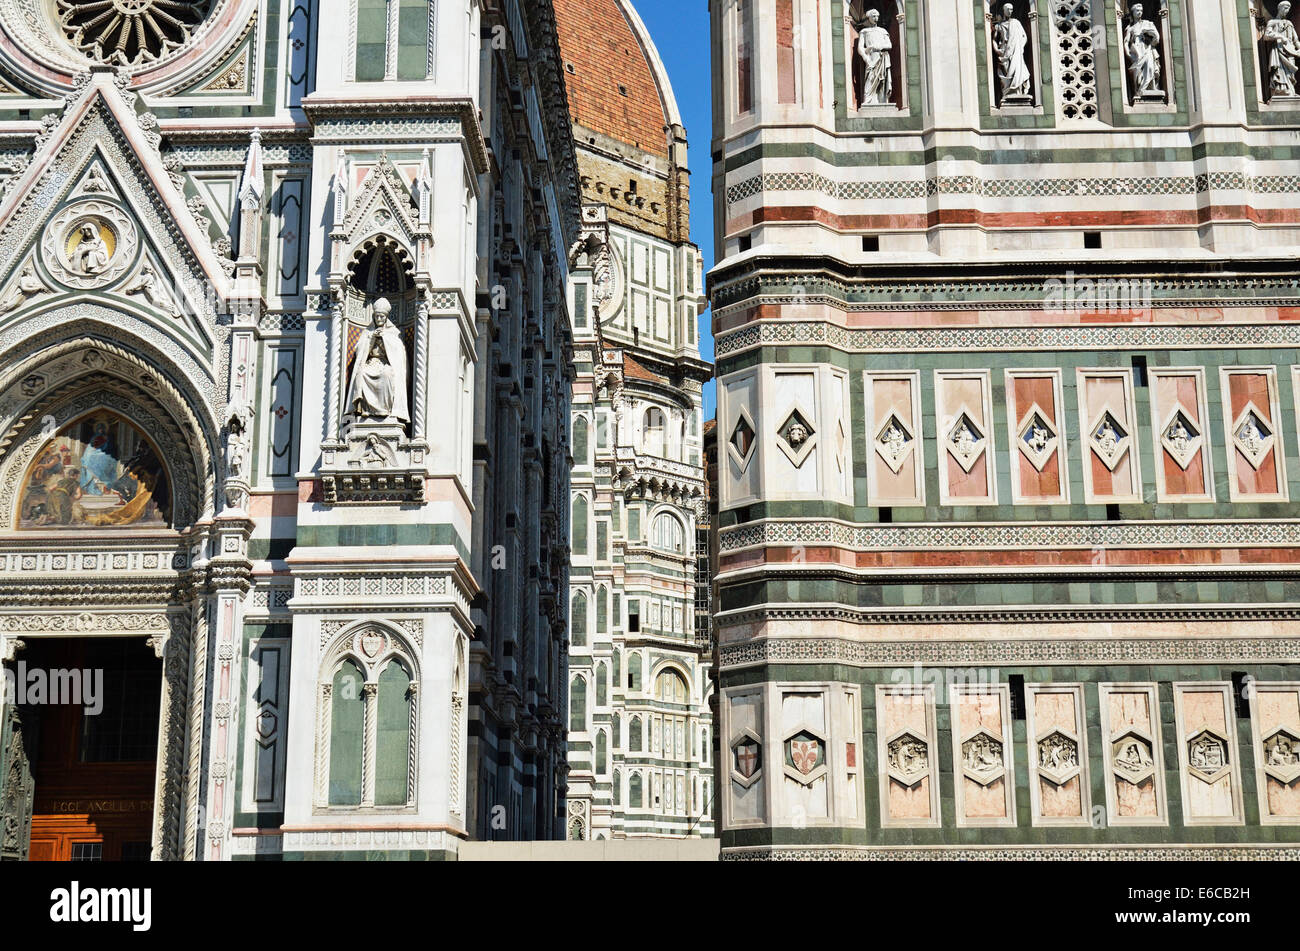 Basilica di Santa Maria del Fiore or Duomo Santa Maria Del Fiore, Florence, Tuscany, Italy, Europe Stock Photo